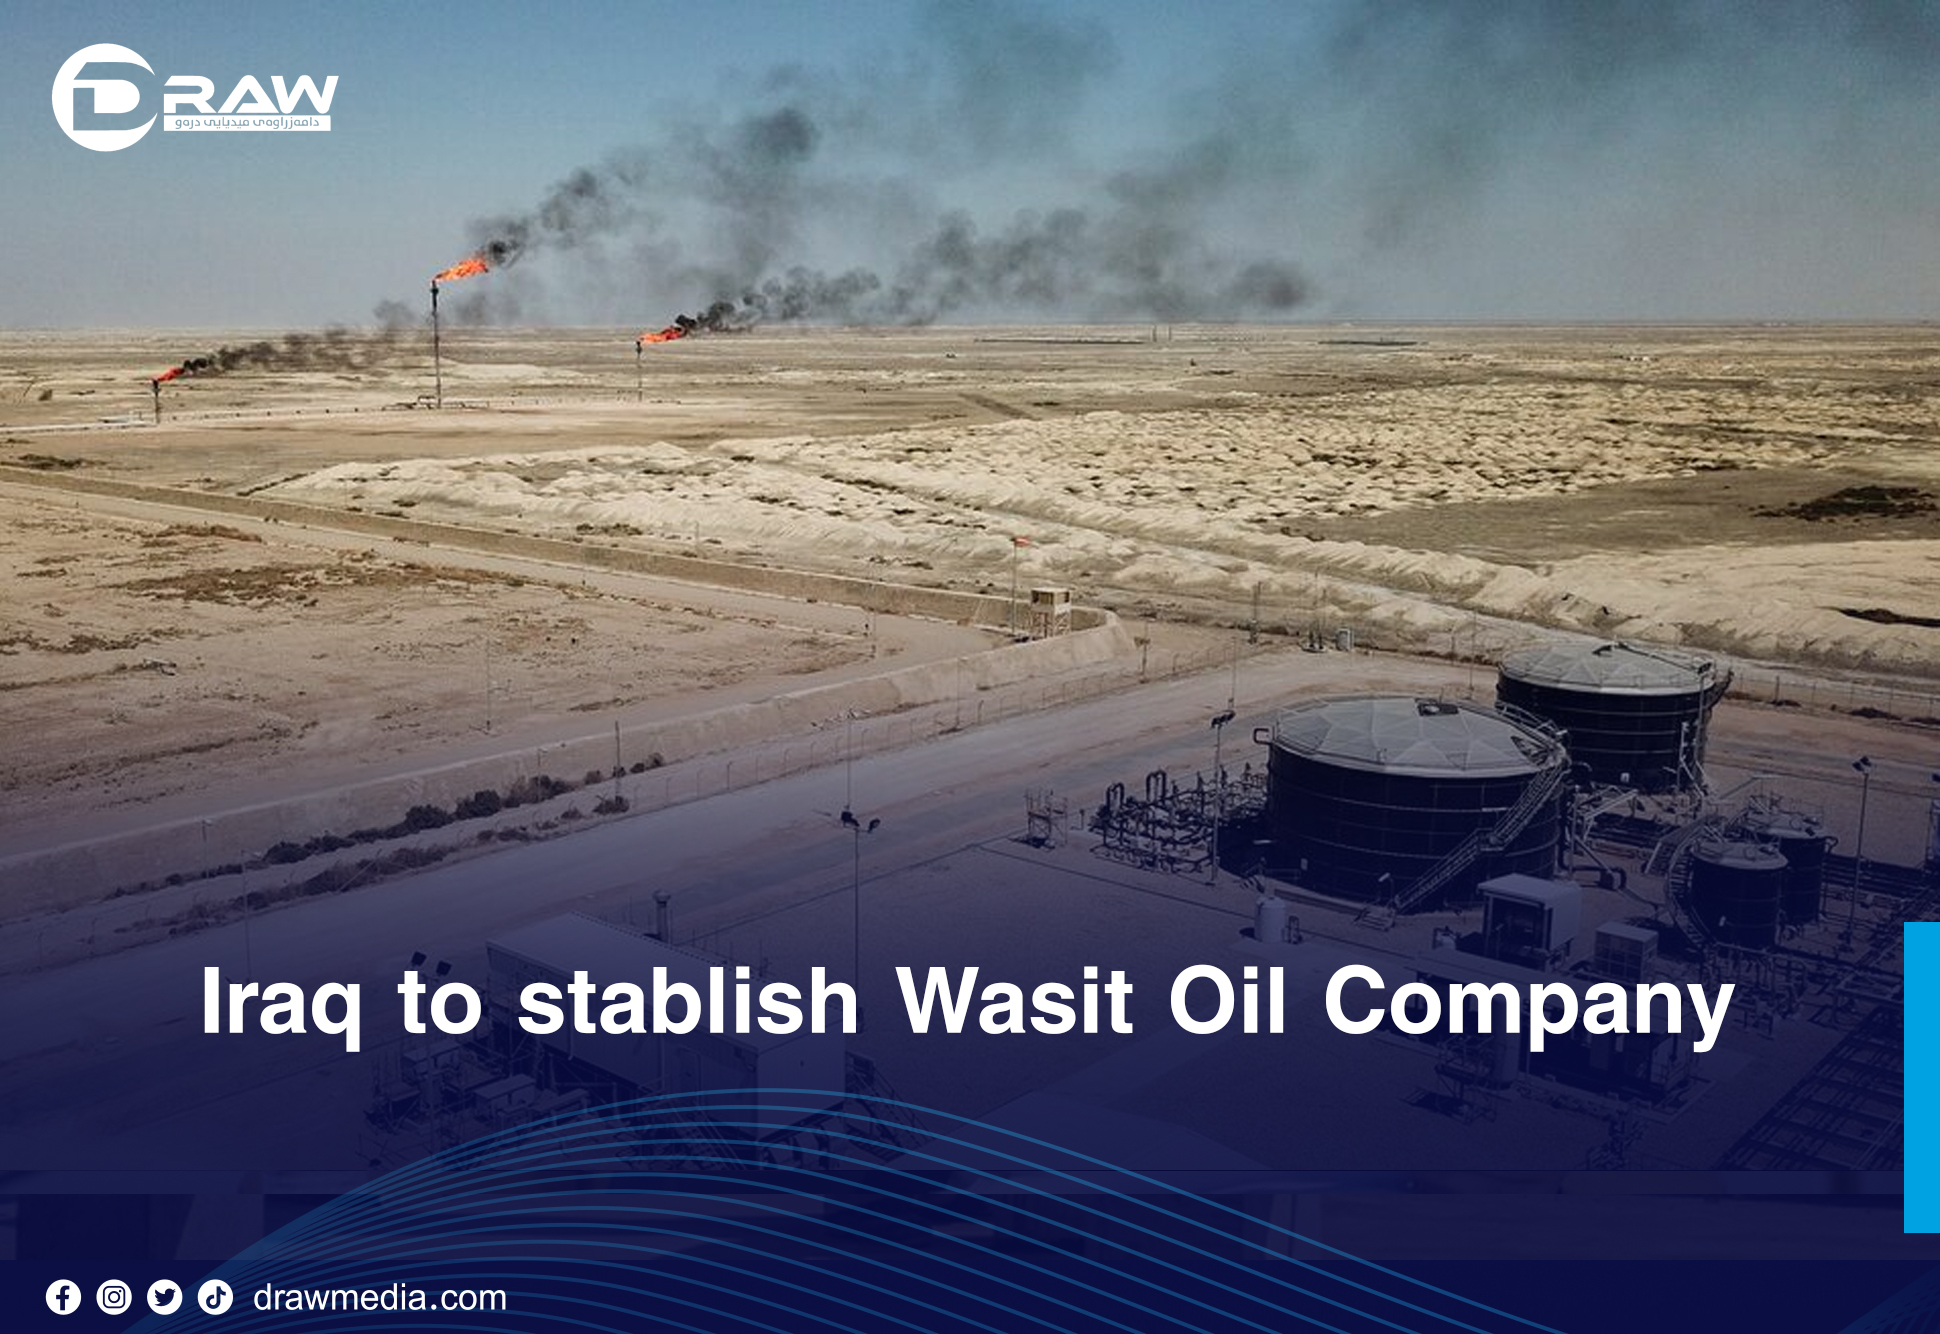 DrawMedia.net / Iraq to stablish Wasit Oil Company